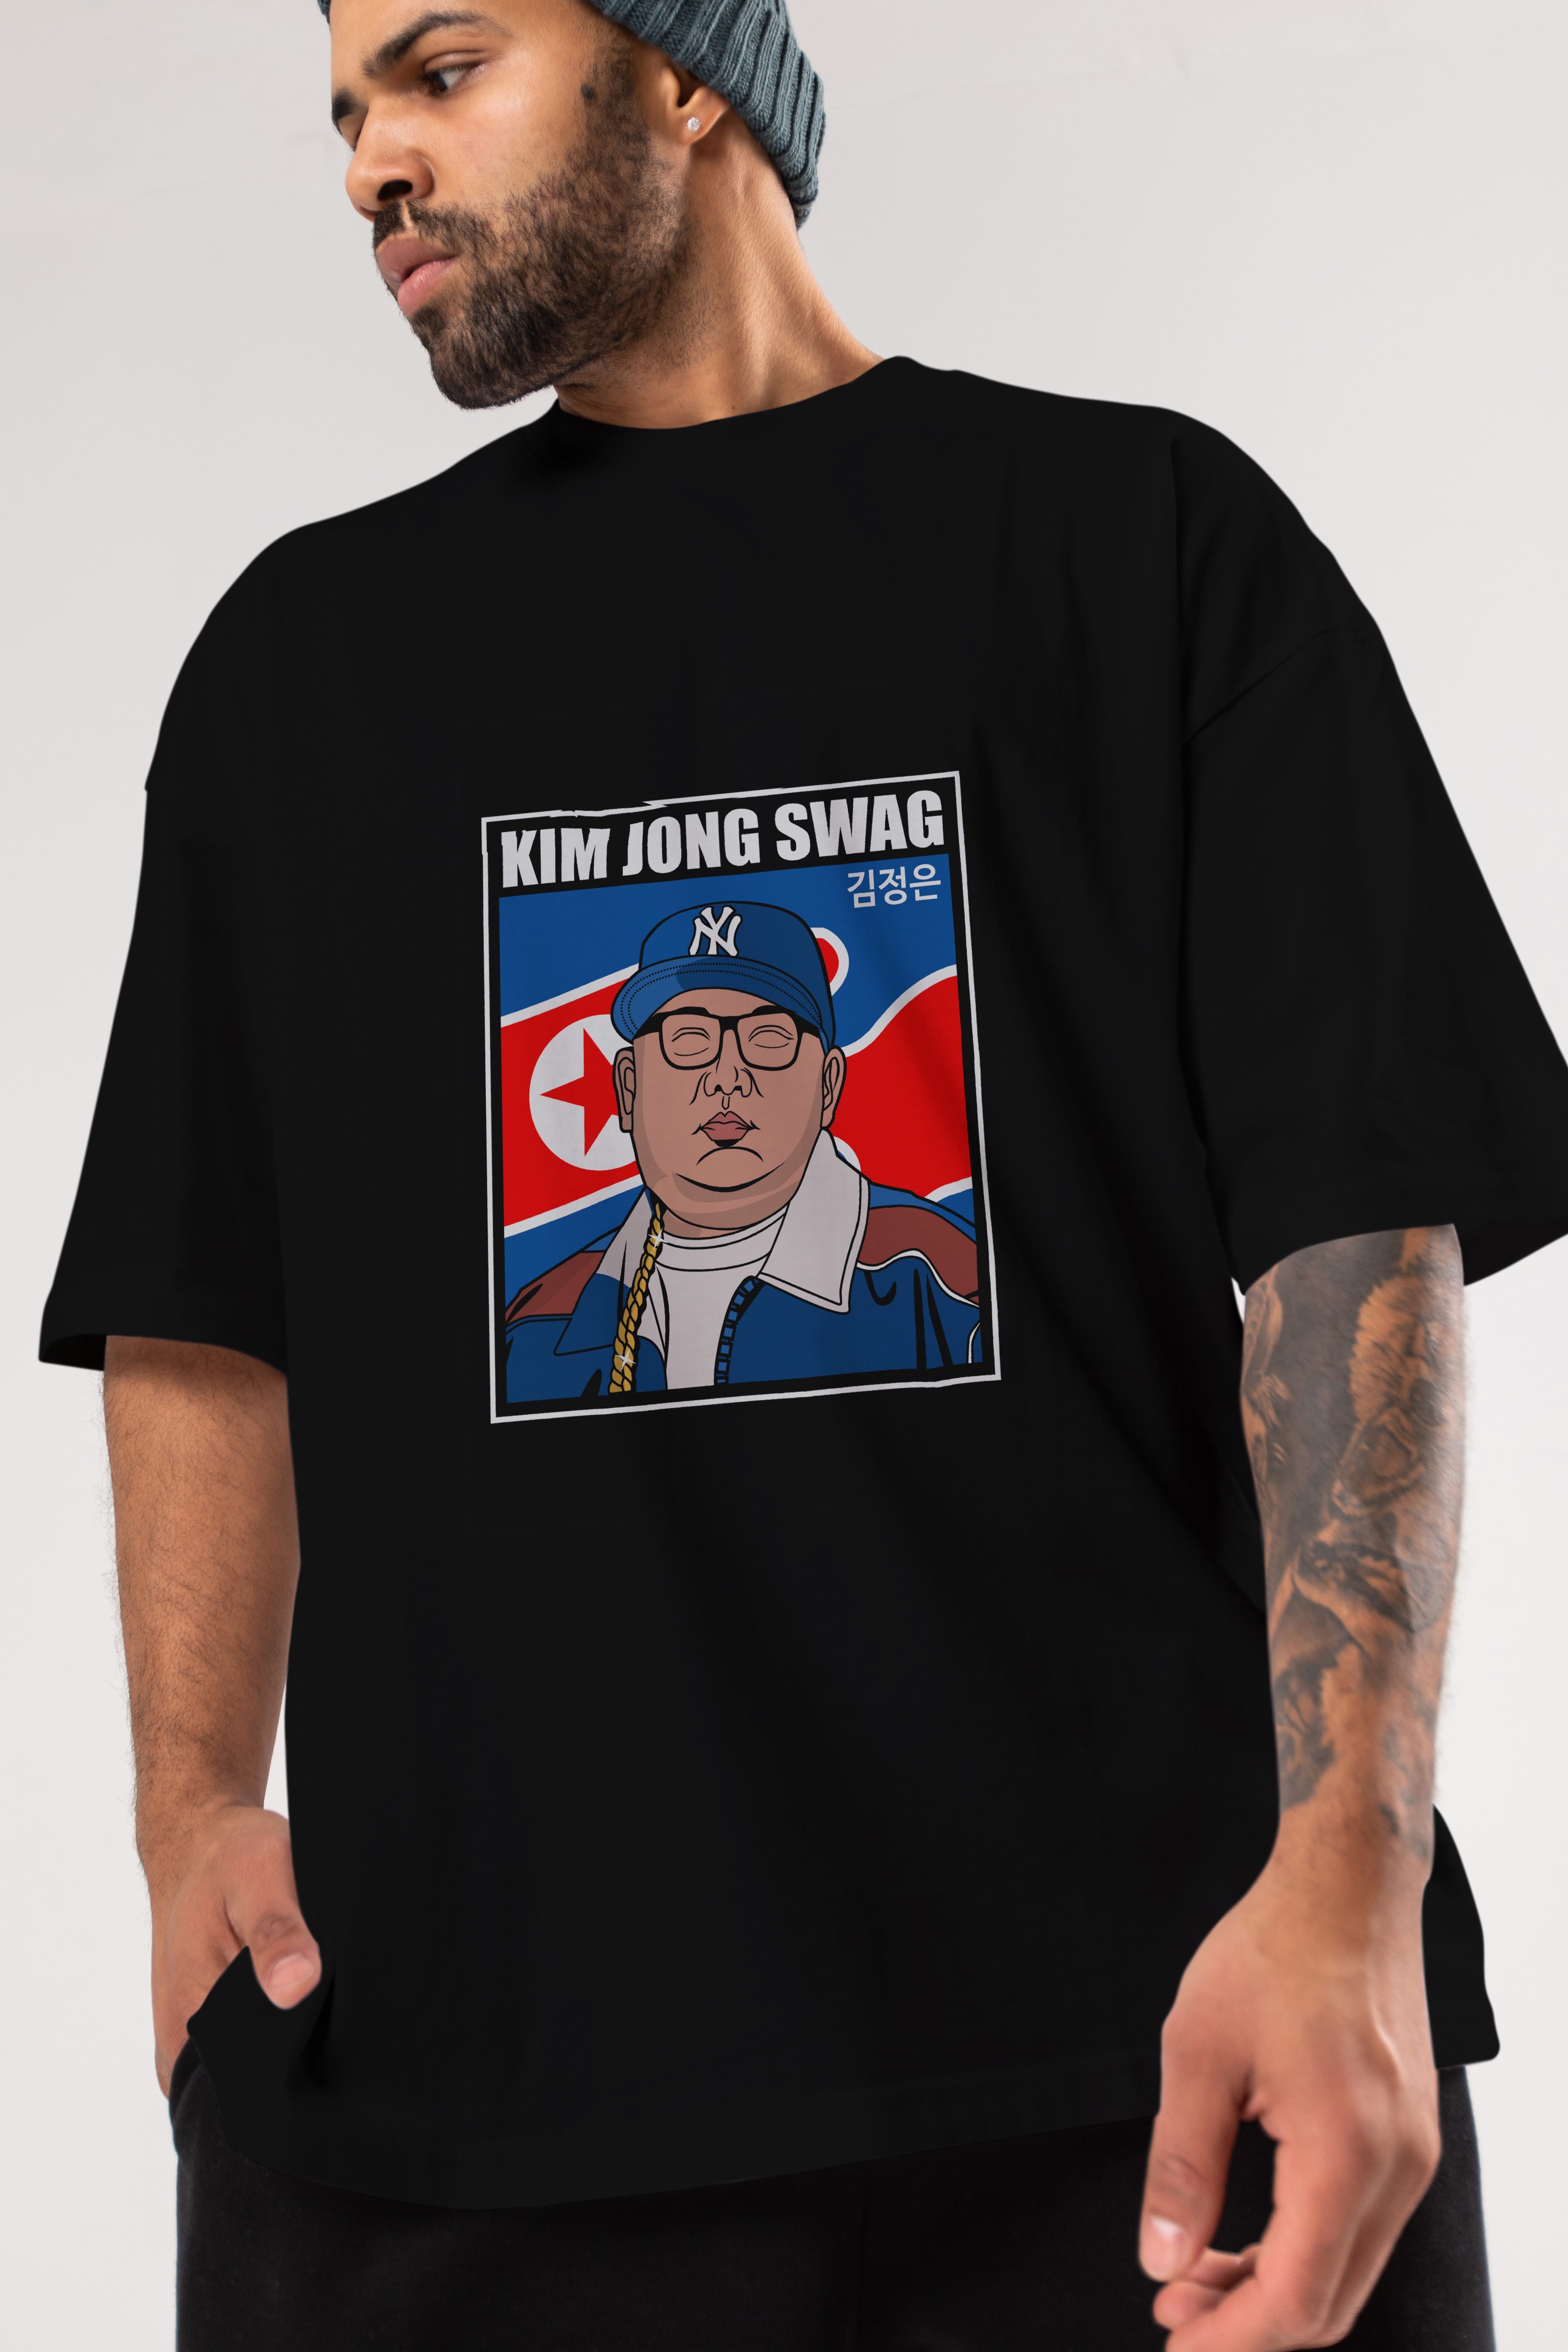 King Jong Swag Ön Baskılı Oversize t-shirt Erkek Kadın Unisex %100 Pamuk tişort